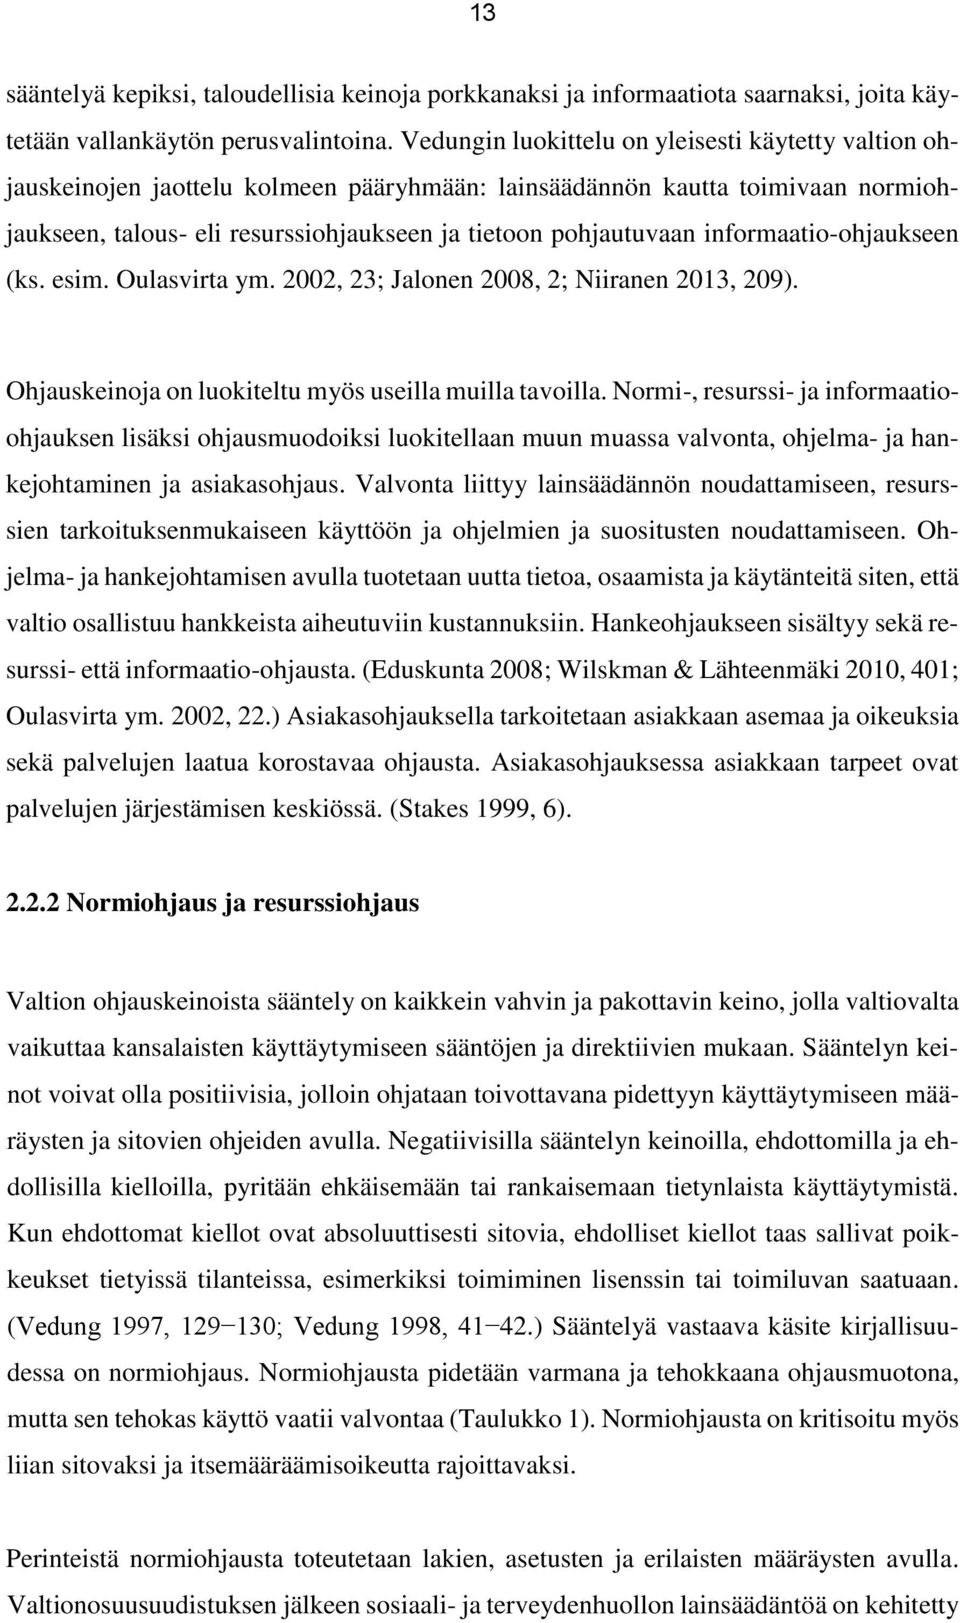 informaatio-ohjaukseen (ks. esim. Oulasvirta ym. 2002, 23; Jalonen 2008, 2; Niiranen 2013, 209). Ohjauskeinoja on luokiteltu myös useilla muilla tavoilla.